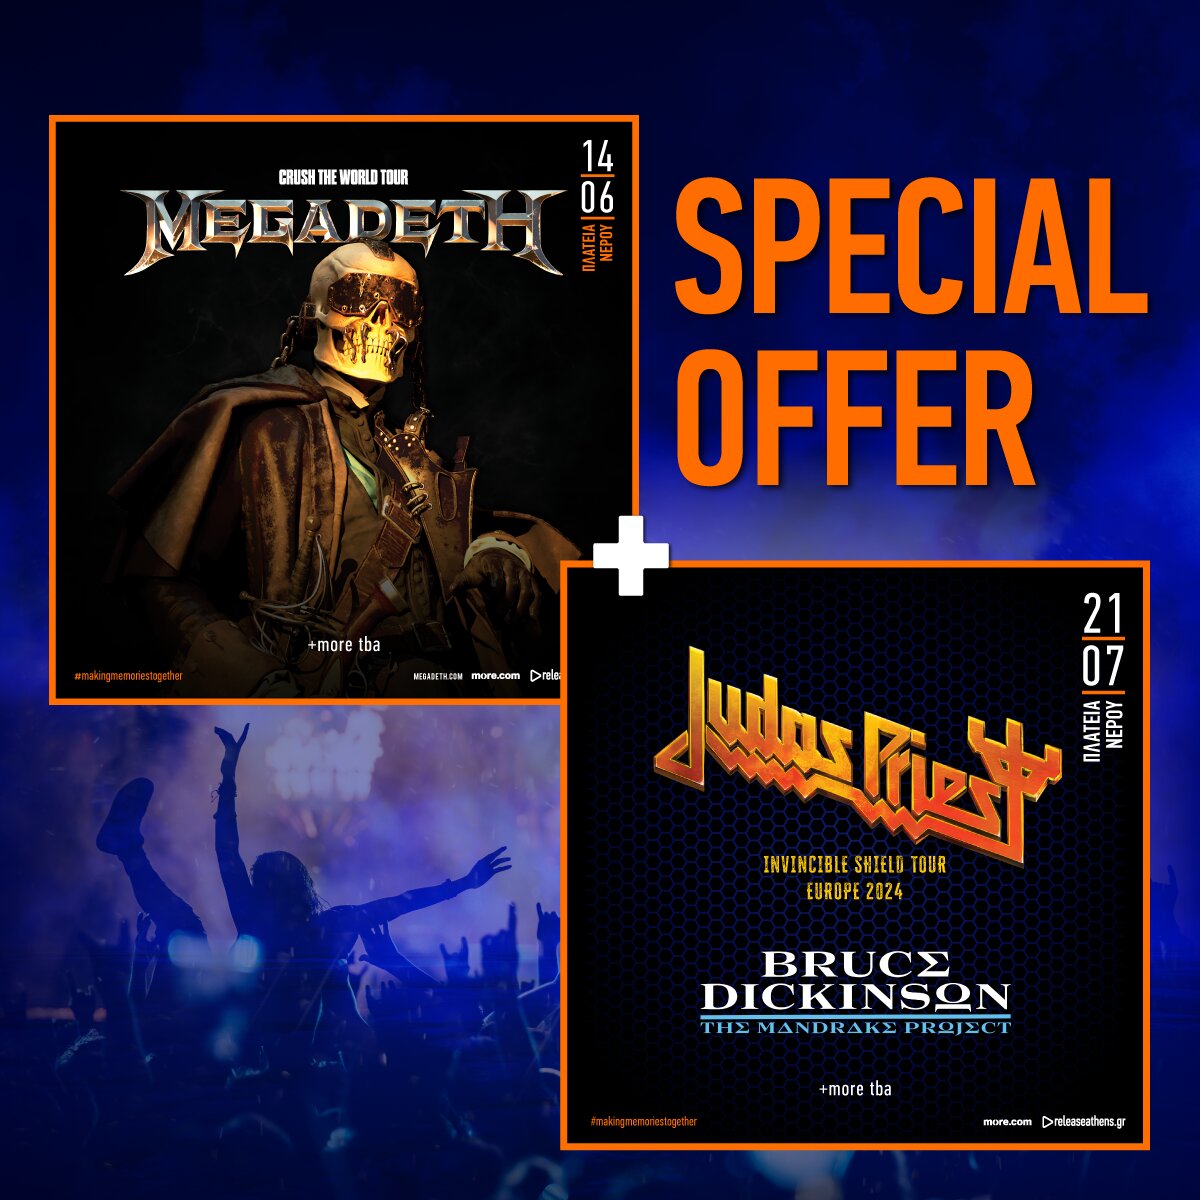 Special offer MegadethJudasBruce 1200x1200